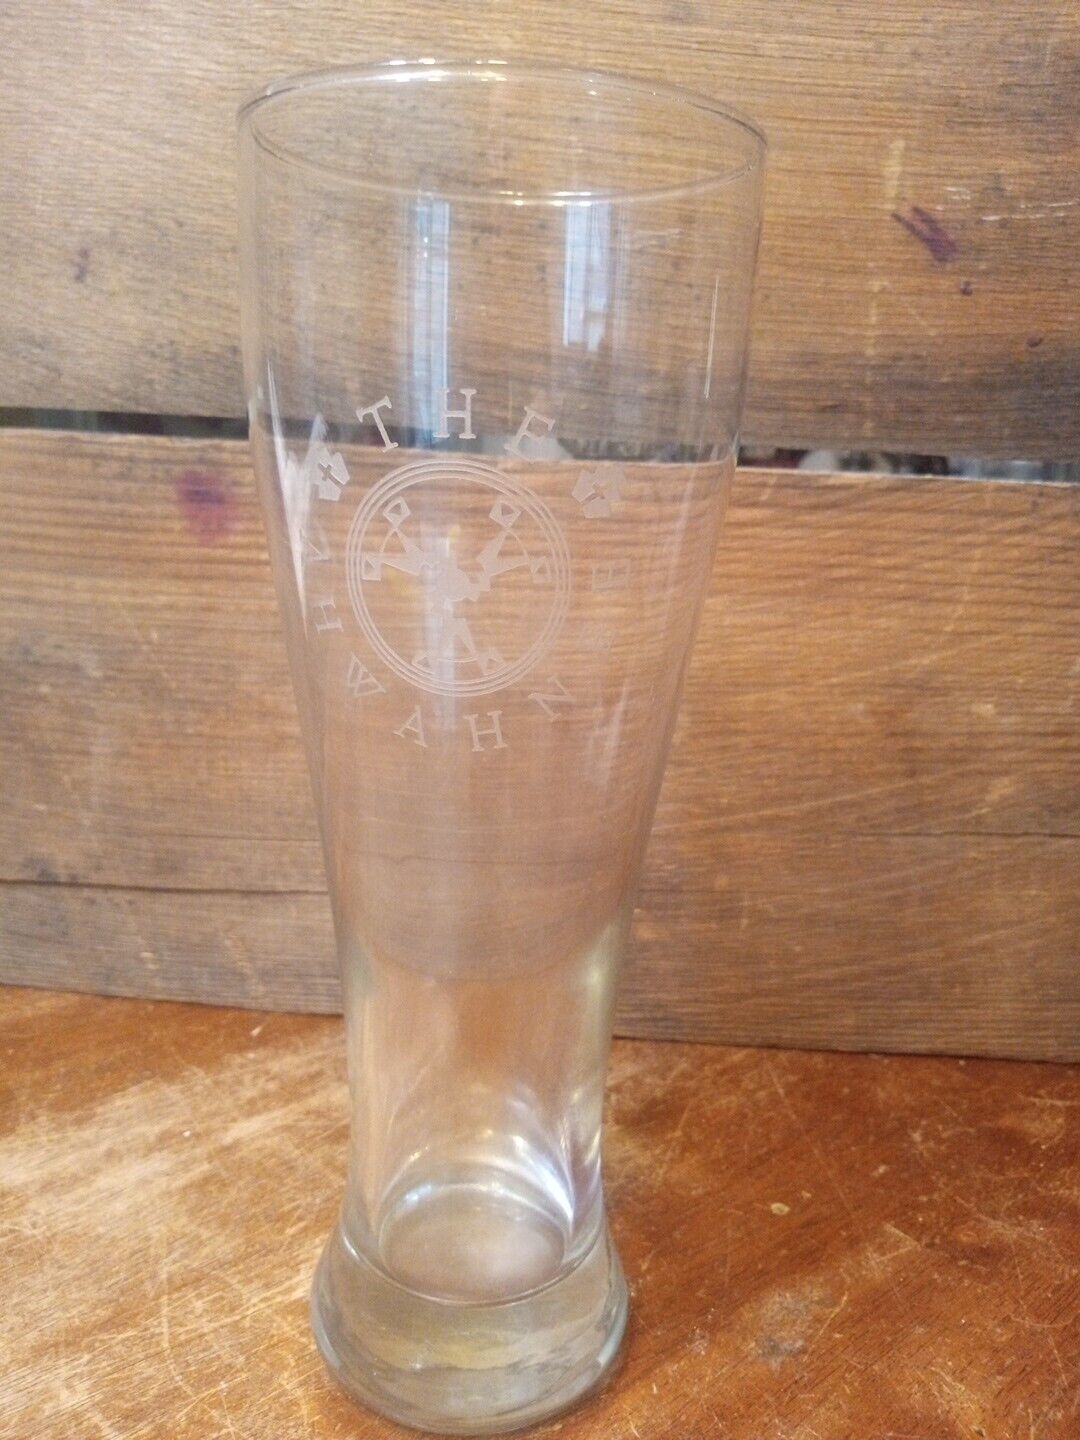  Ahwahnee Hotel Pilsner Beer Glass from Yosemite, CA 